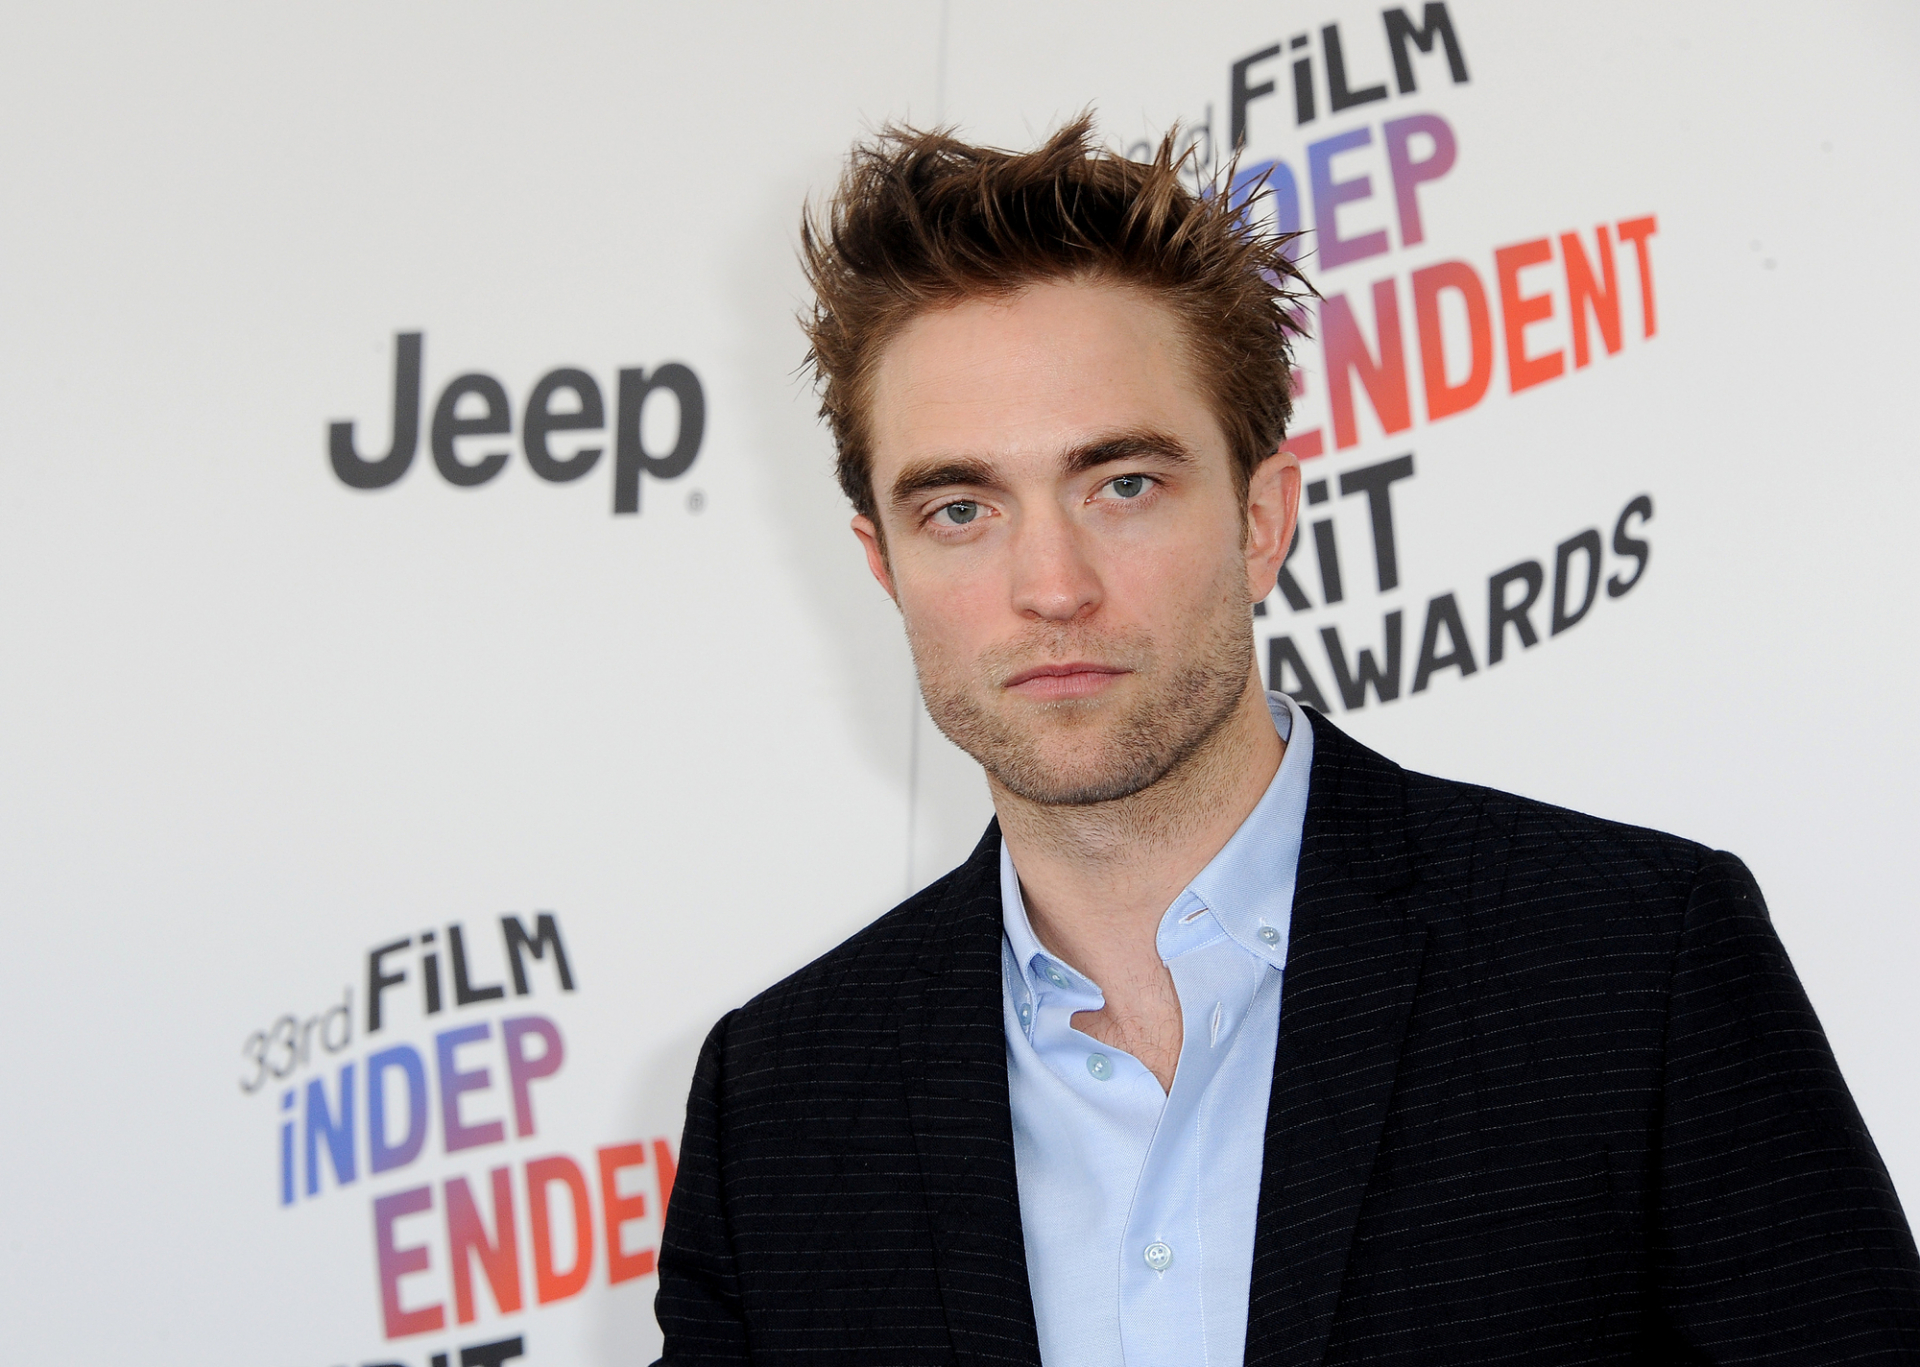 Robert Pattinson szerint alattomosak az elvárások, ha a férfiak testéről van szó